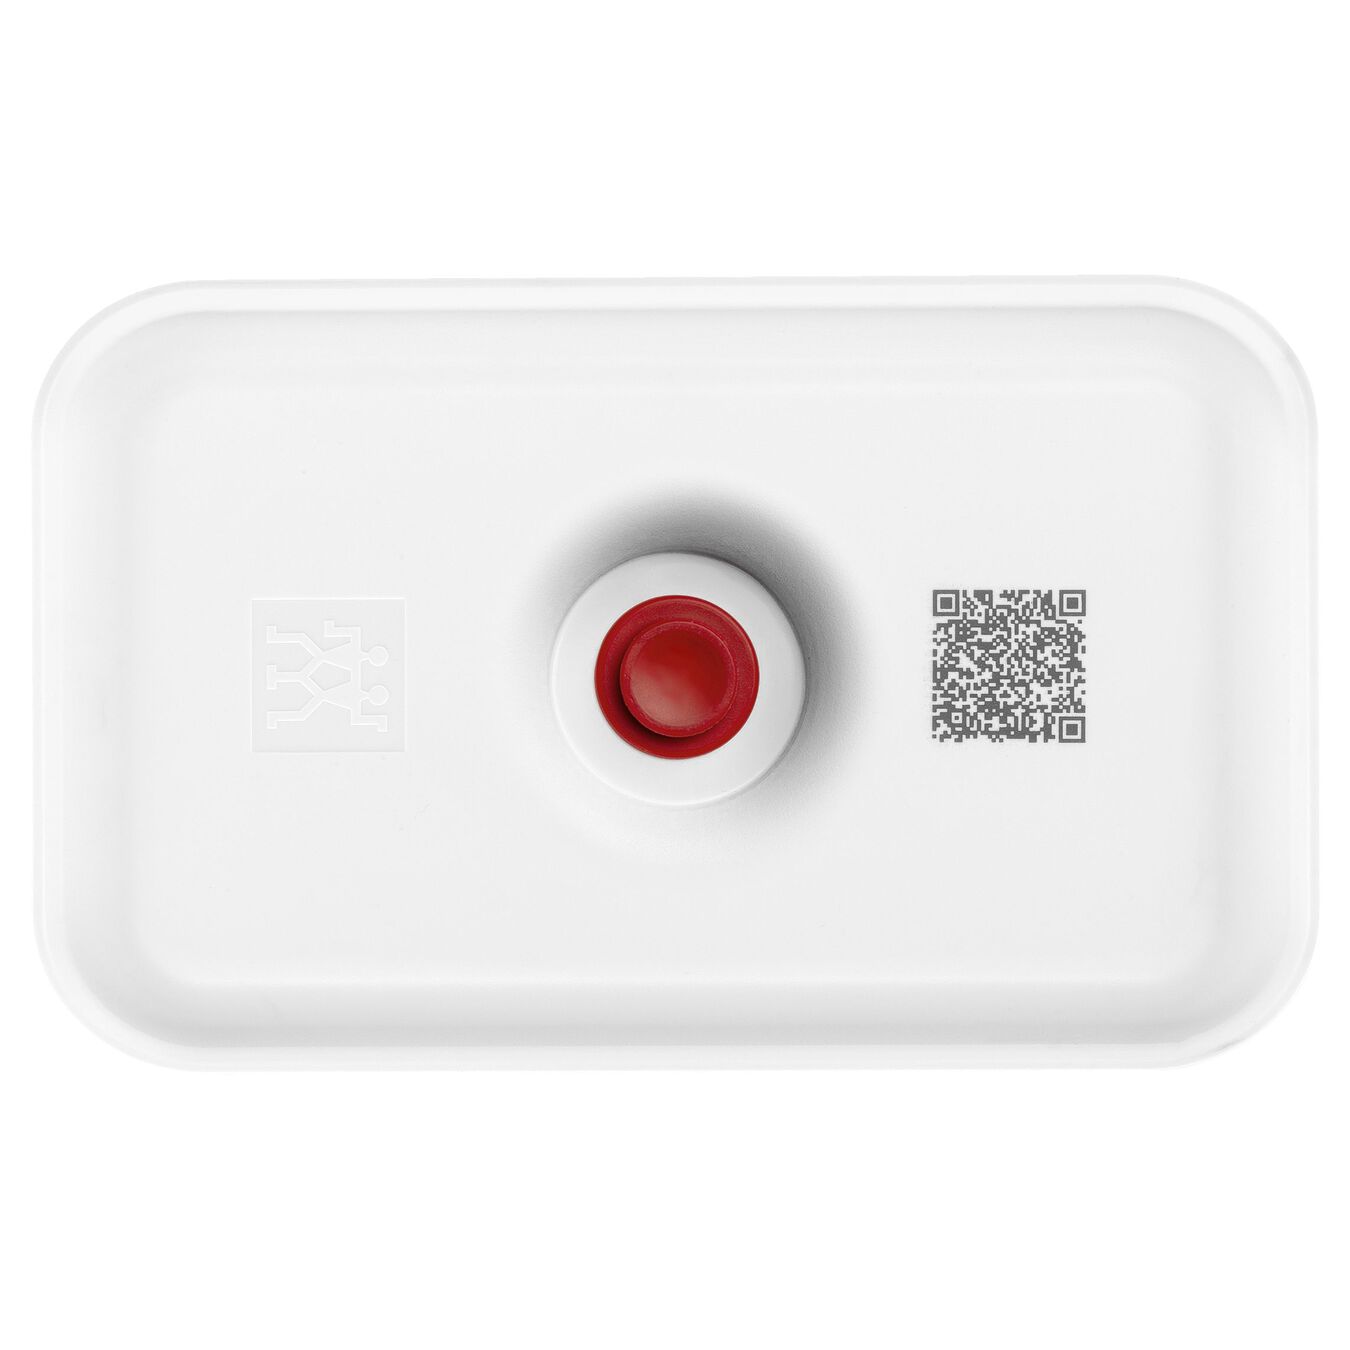 Lunch box sottovuoto M, plastica, bianco-rosso,,large 2